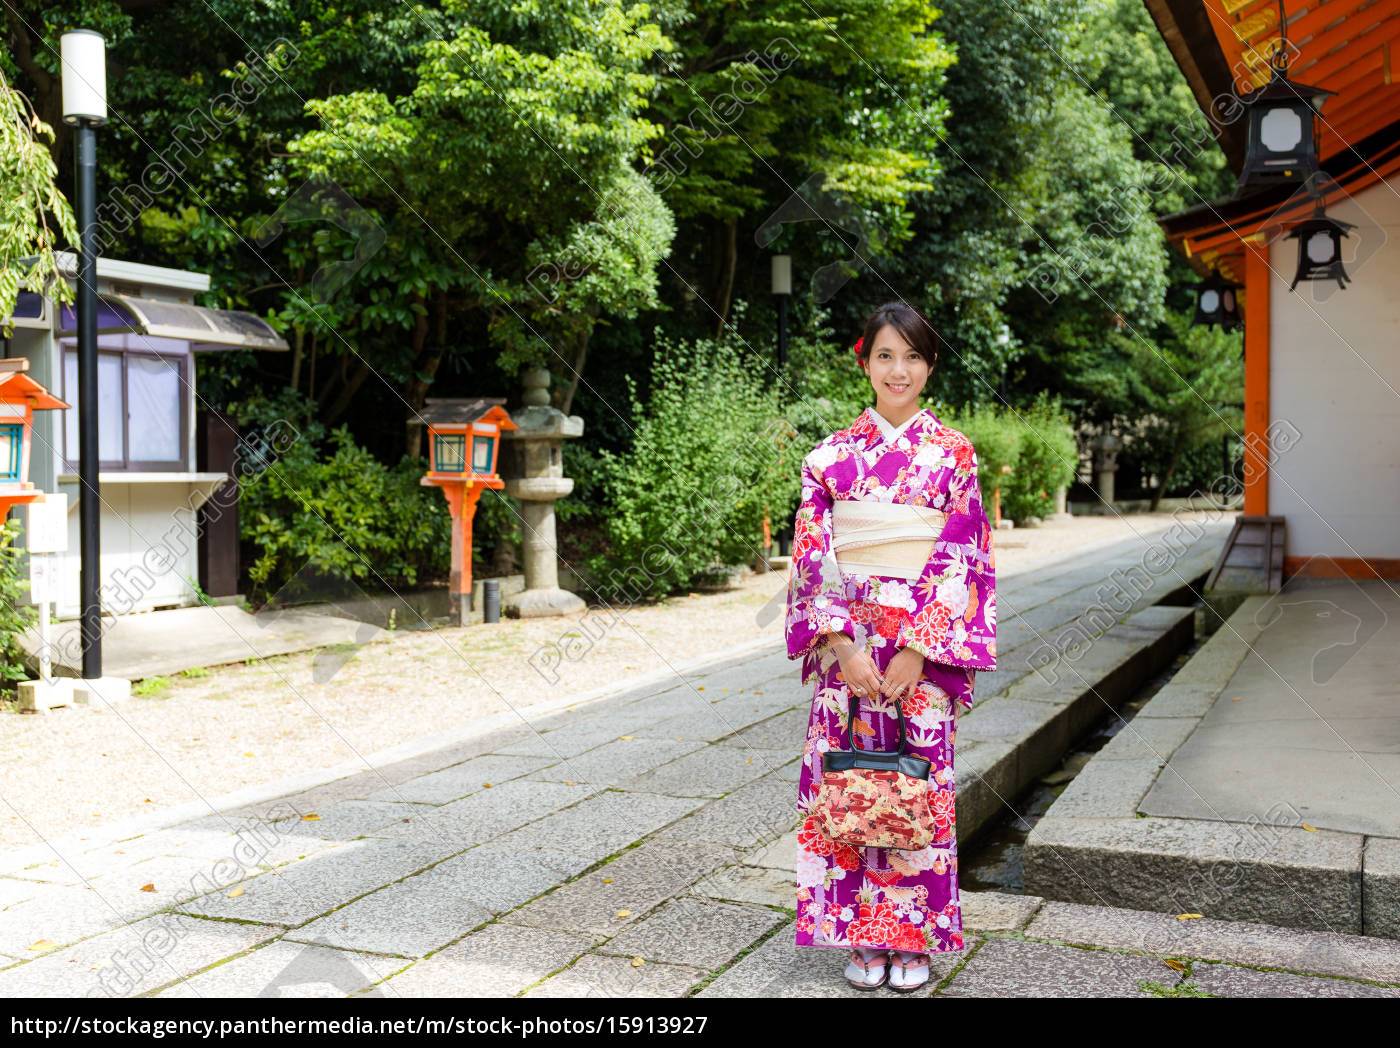 Himmel dette liner asiatisk kvinde med kimono kjole på traditionel tempel - Royalty Free Image  #15913927 | PantherMedia Billedbureau